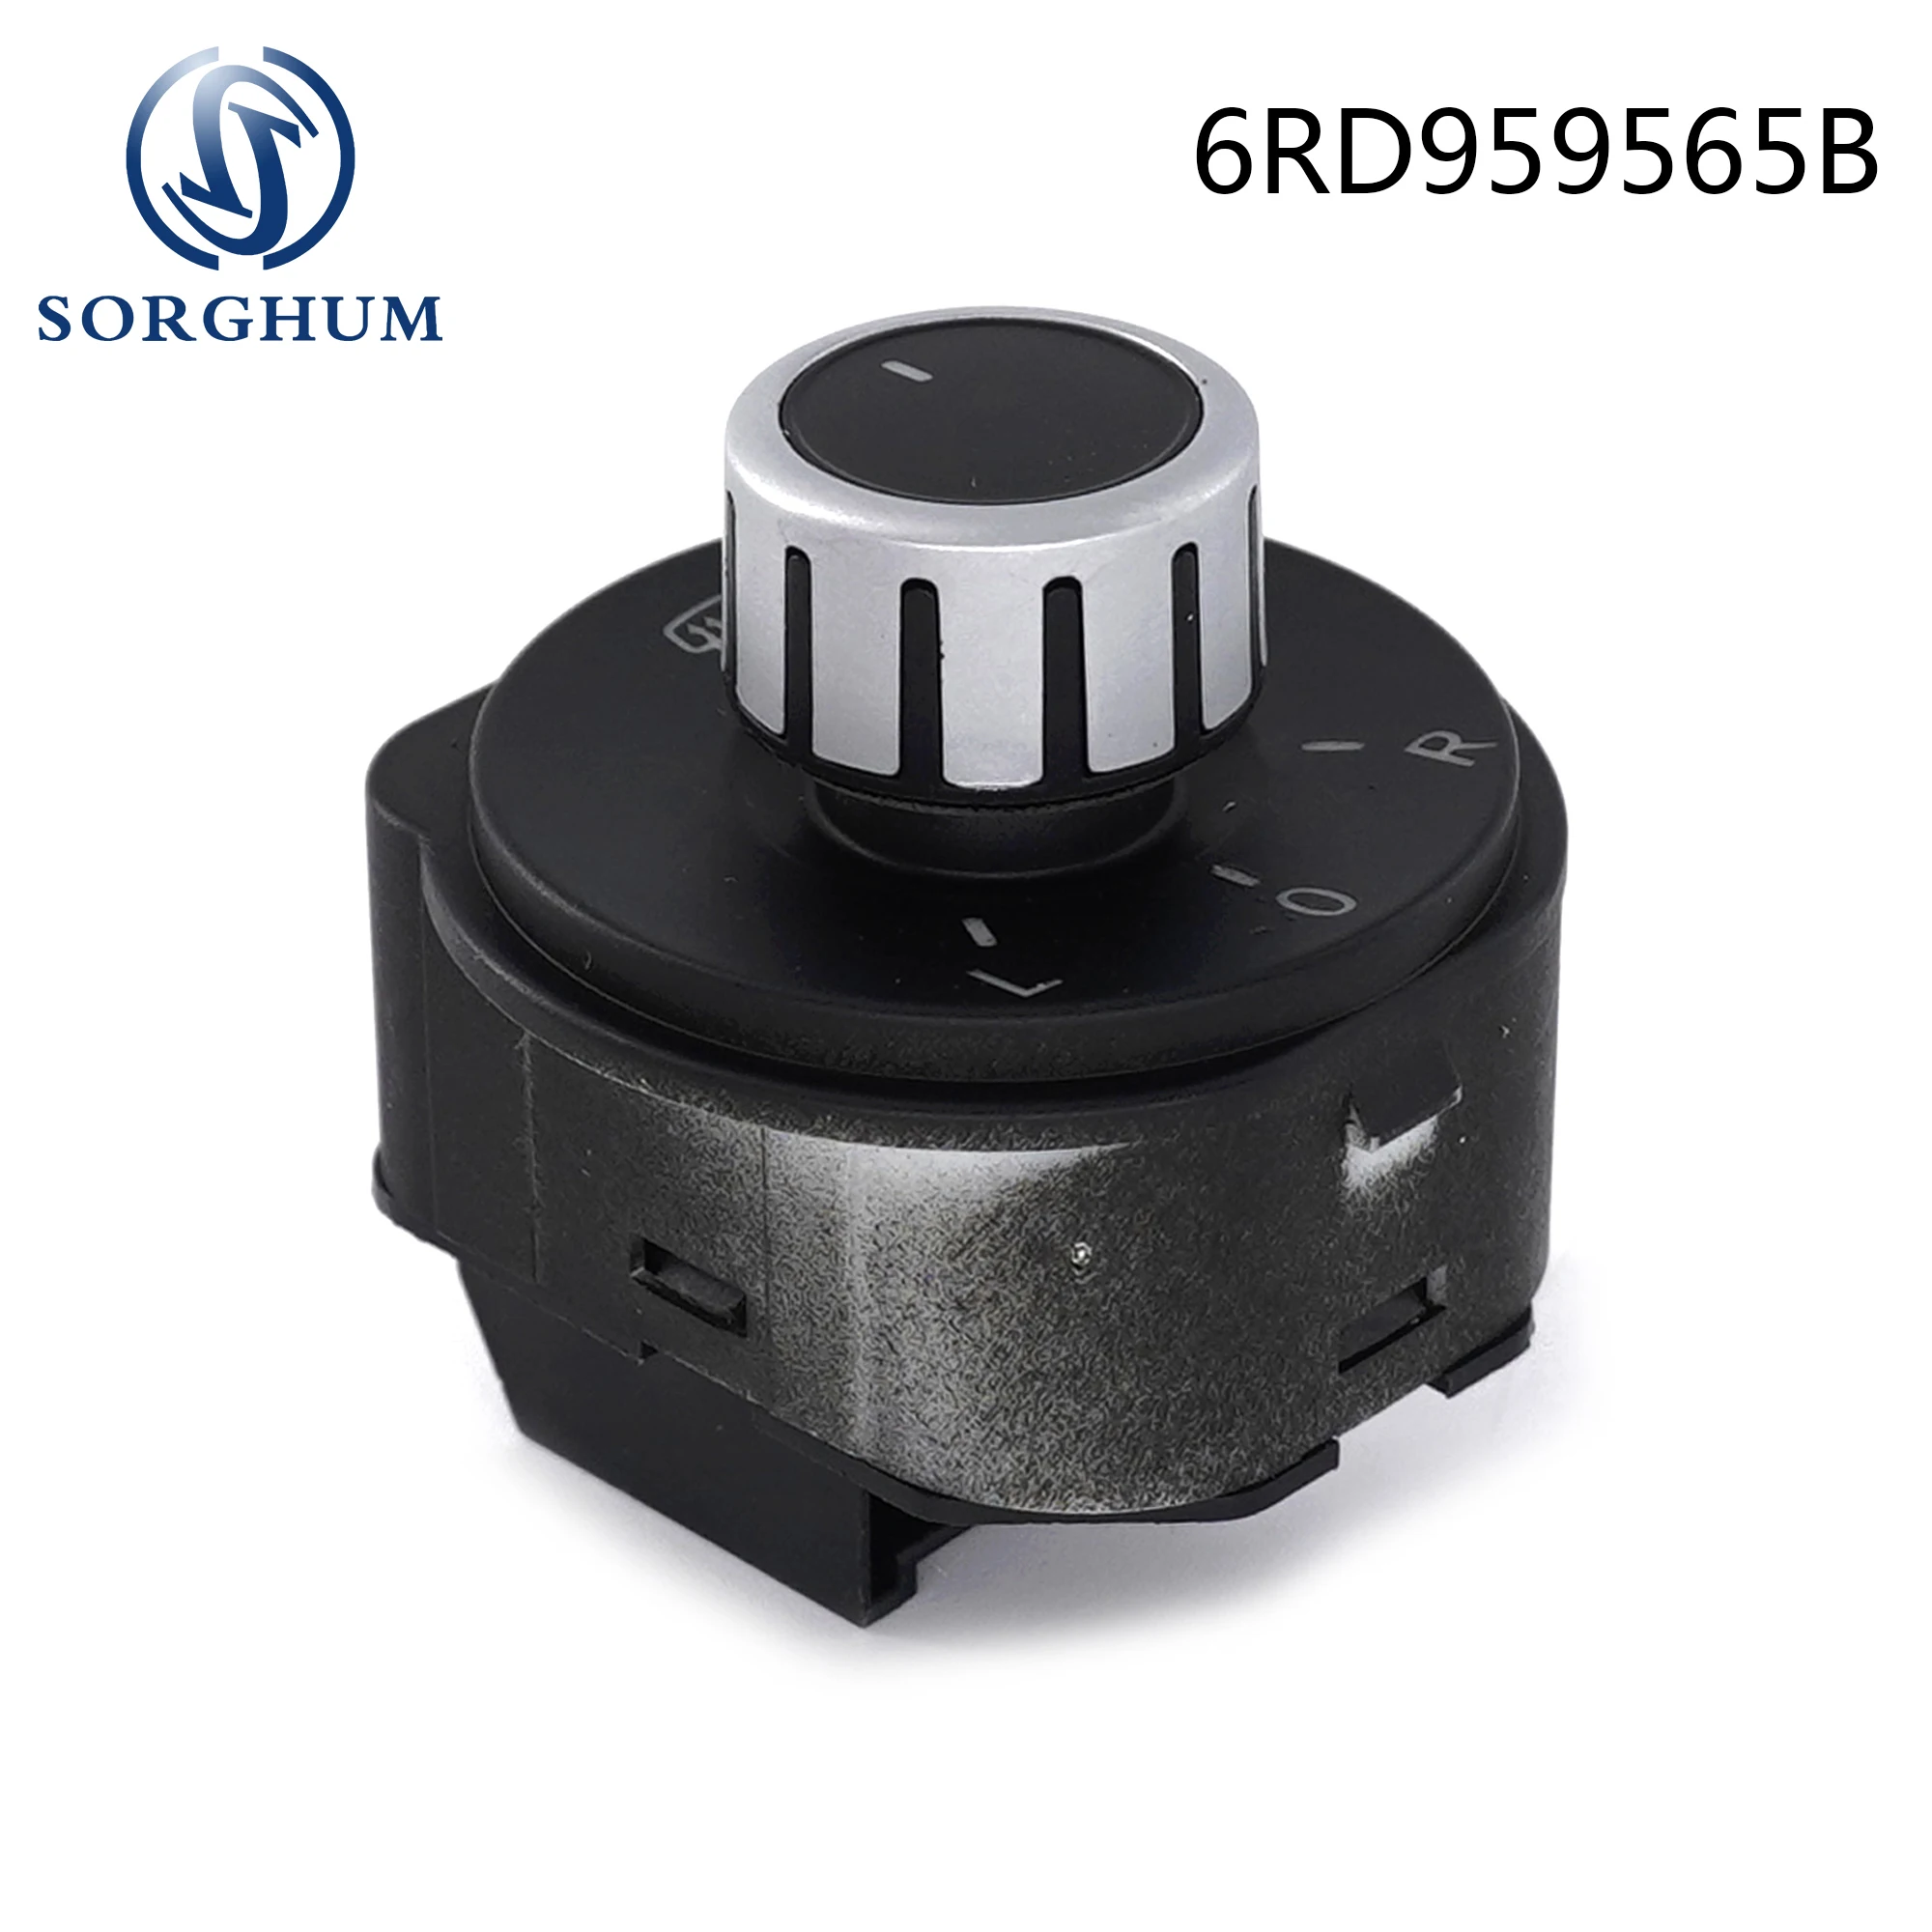 

Sorghum Rear Mirror Adjust Knob Control Switch 6RD959565B For VW Volkswagen Polo 6R 2010-2017 6RD 959 565B 6RD 959 565 B